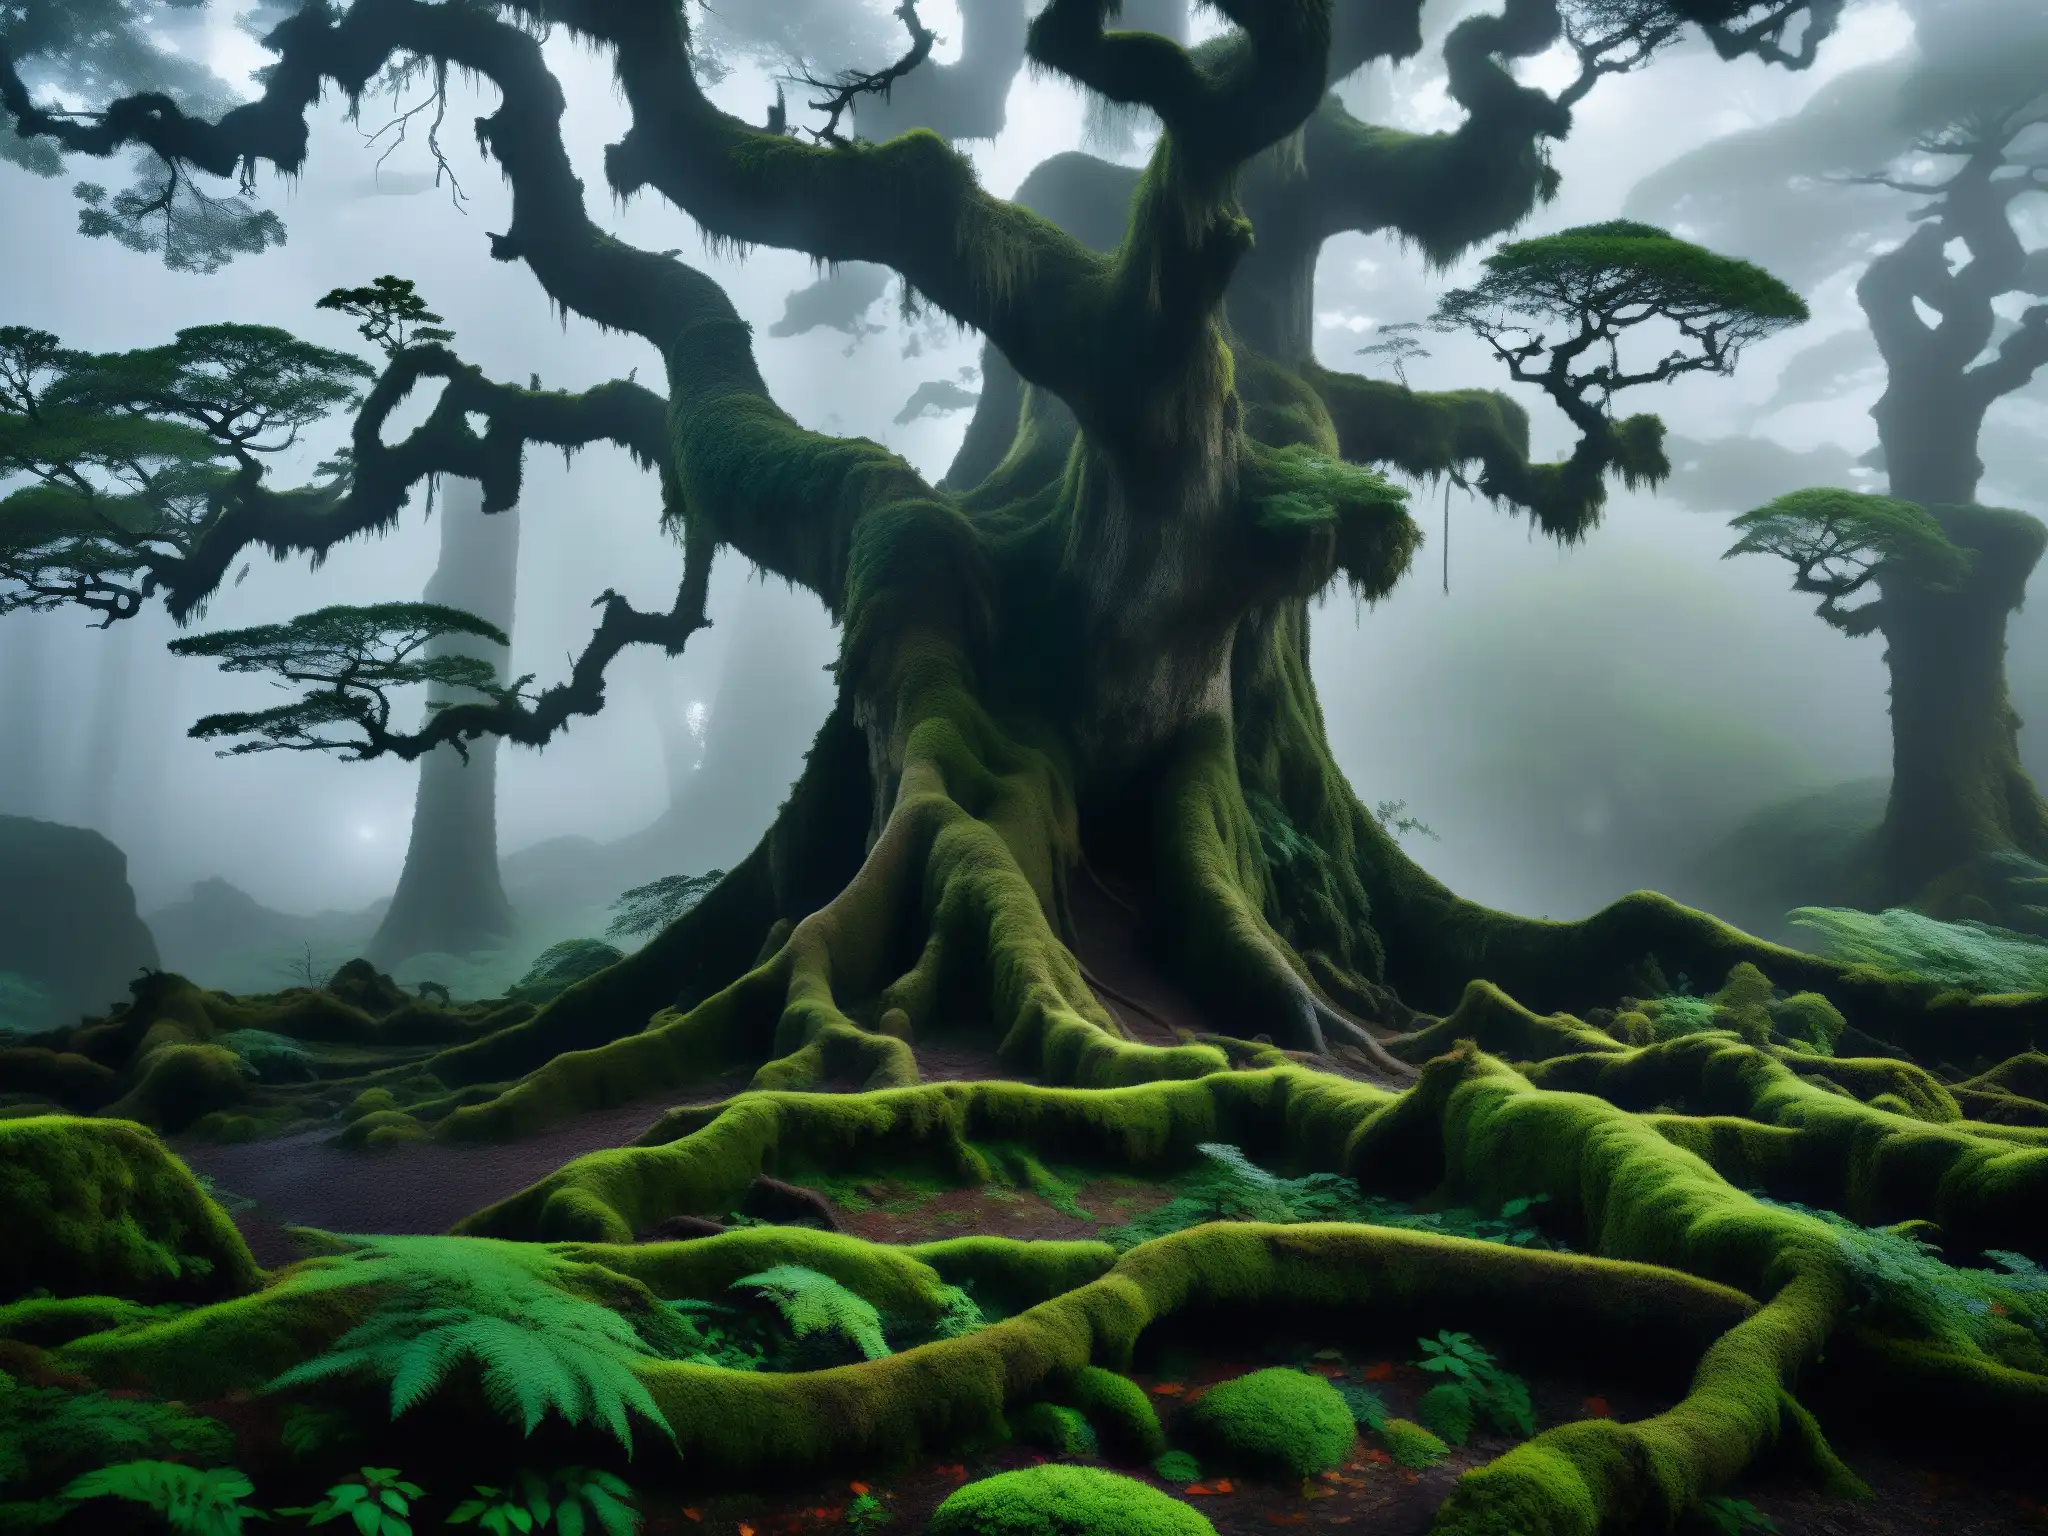 Un bosque oscuro y brumoso en Japón, con árboles retorcidos y luces misteriosas entre la maleza